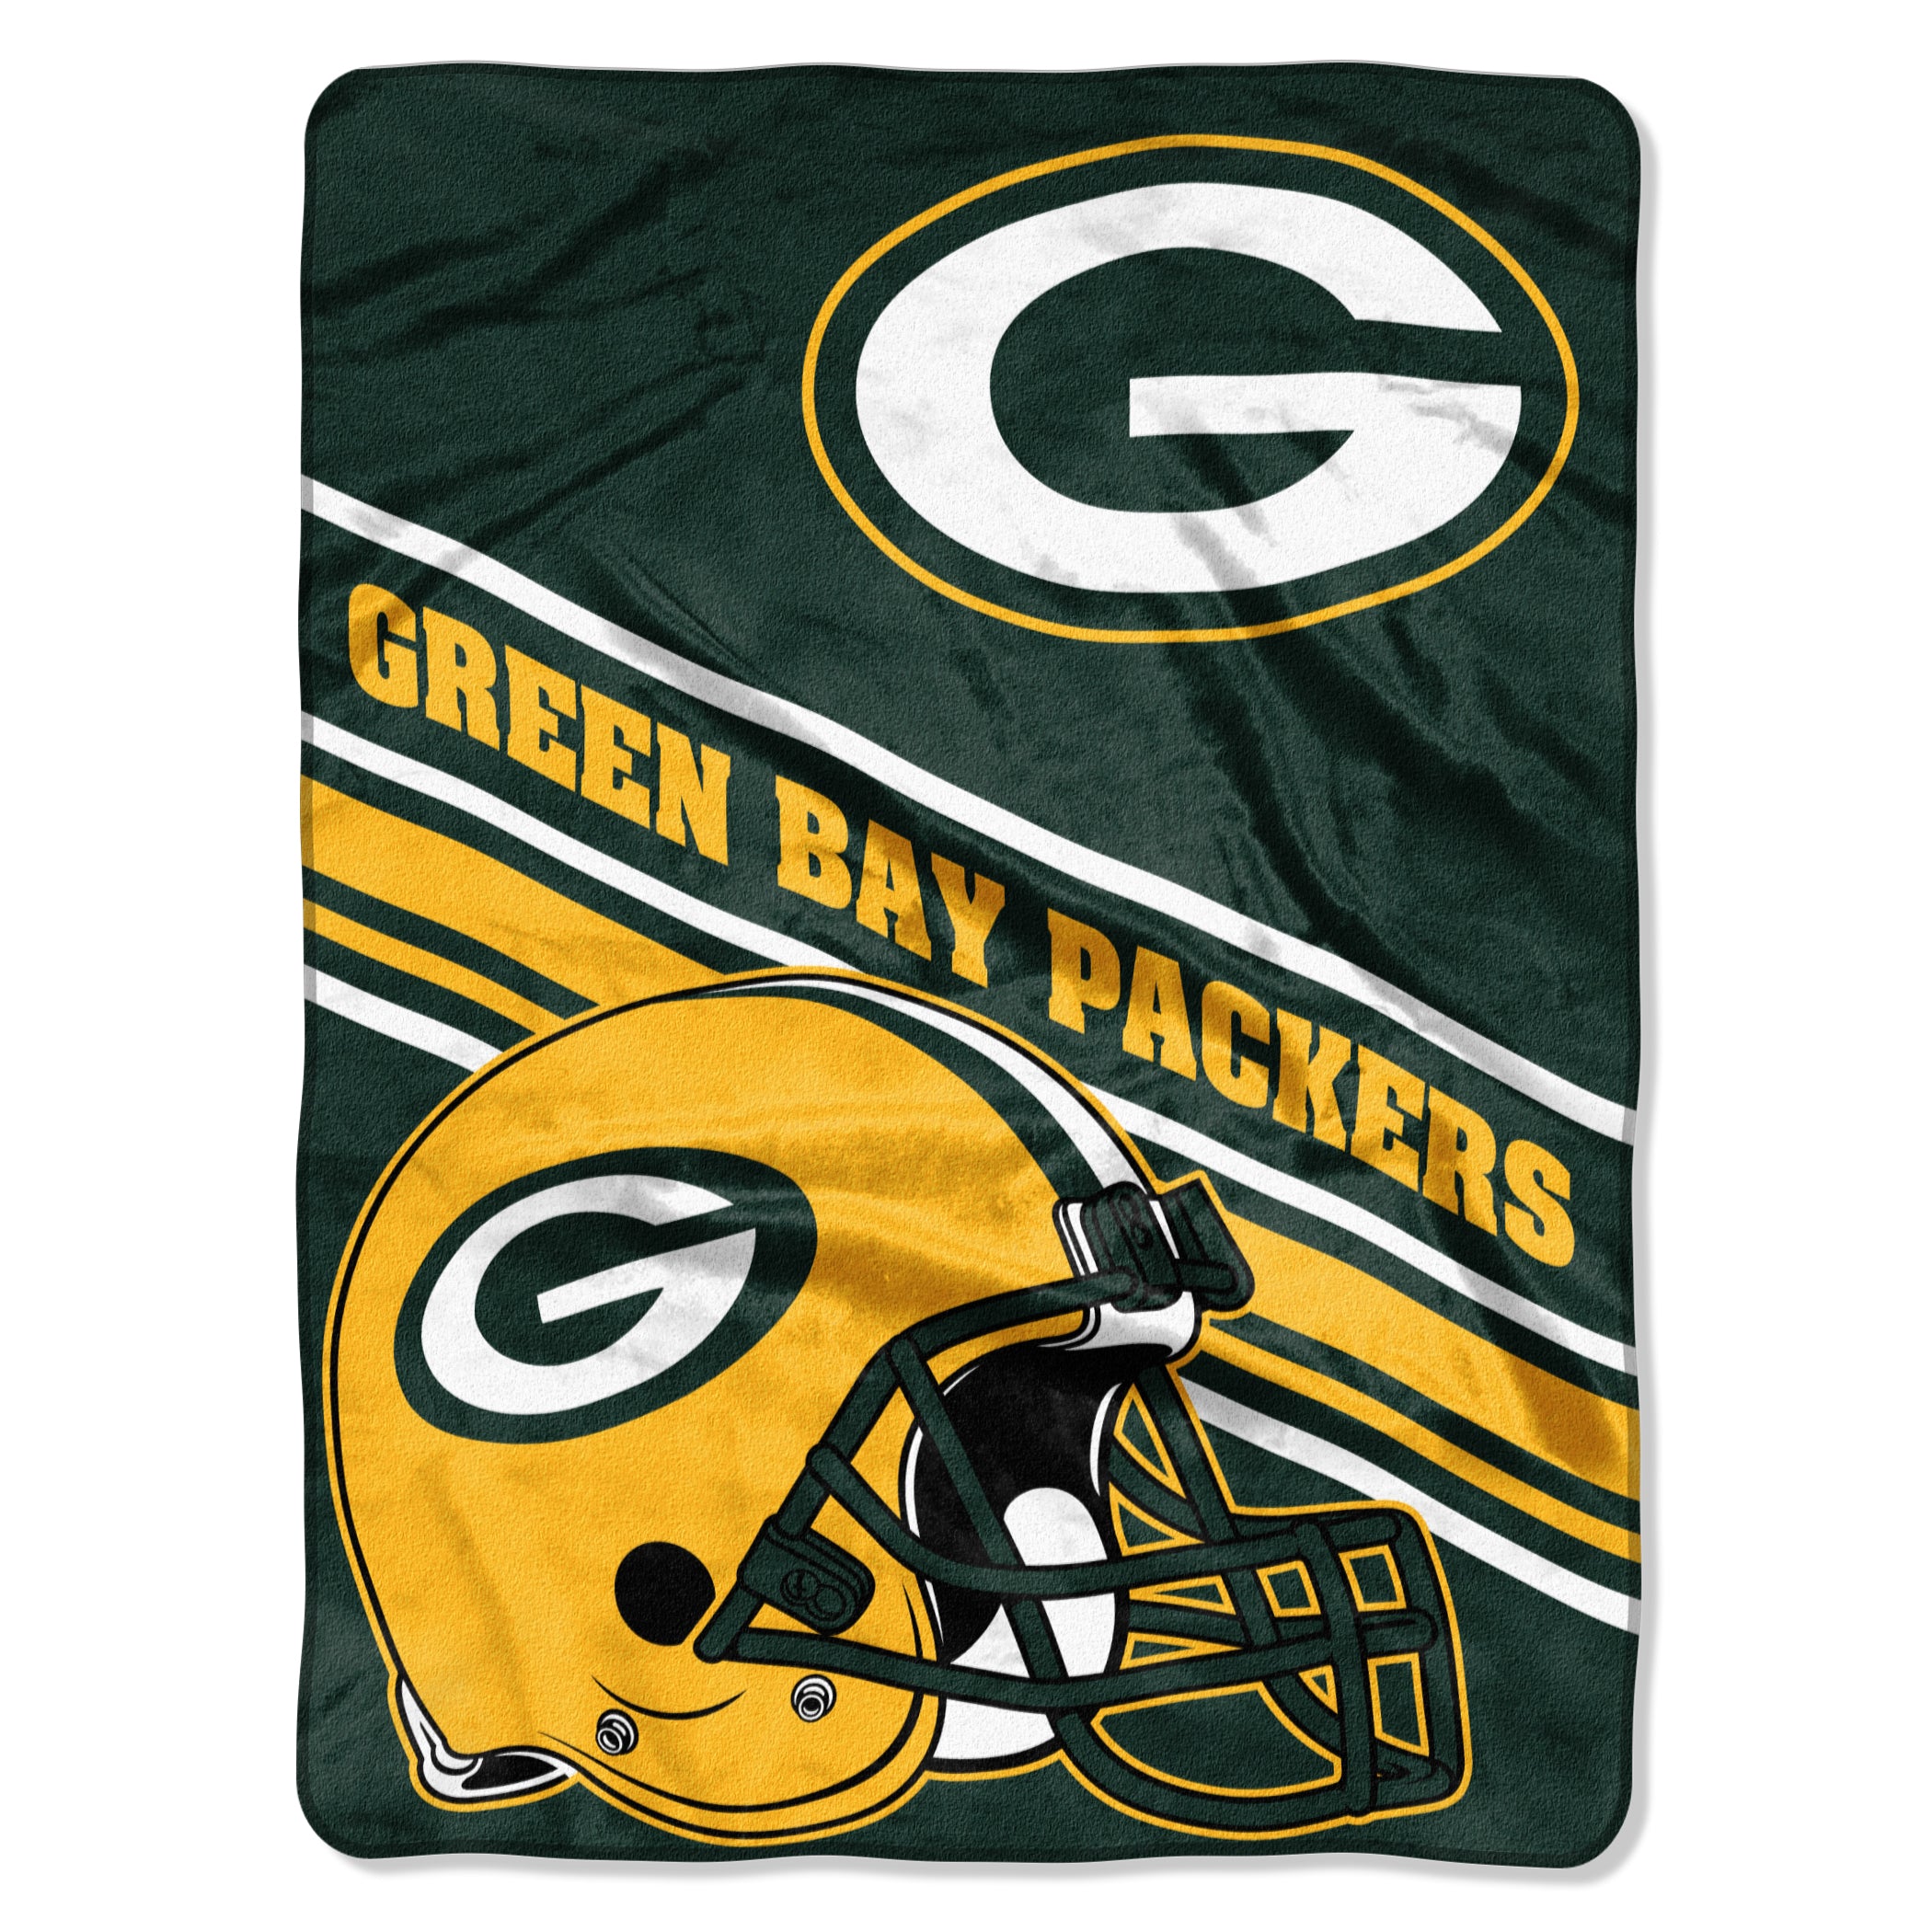 Green Bay Packers Blanket 60x80 Raschel Slant Design